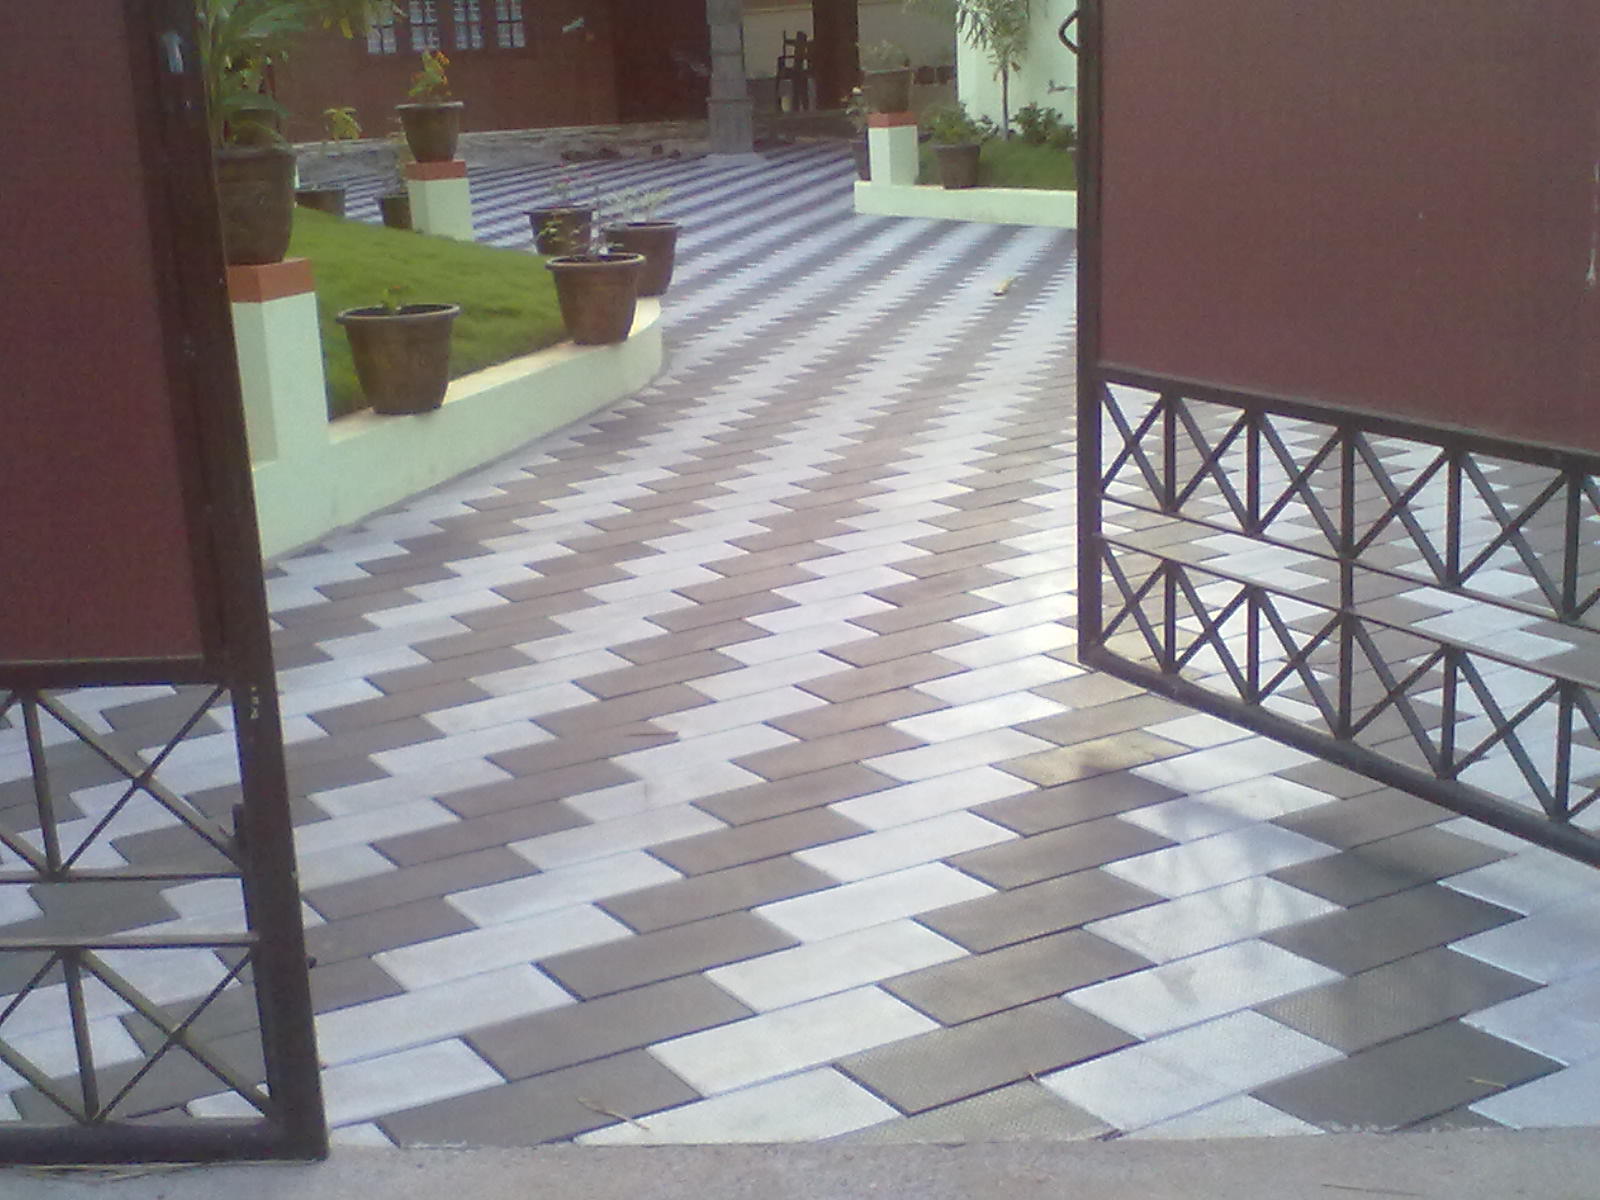 Porch Flooring Designs In India | Joy Studio Design Gallery - Best Design